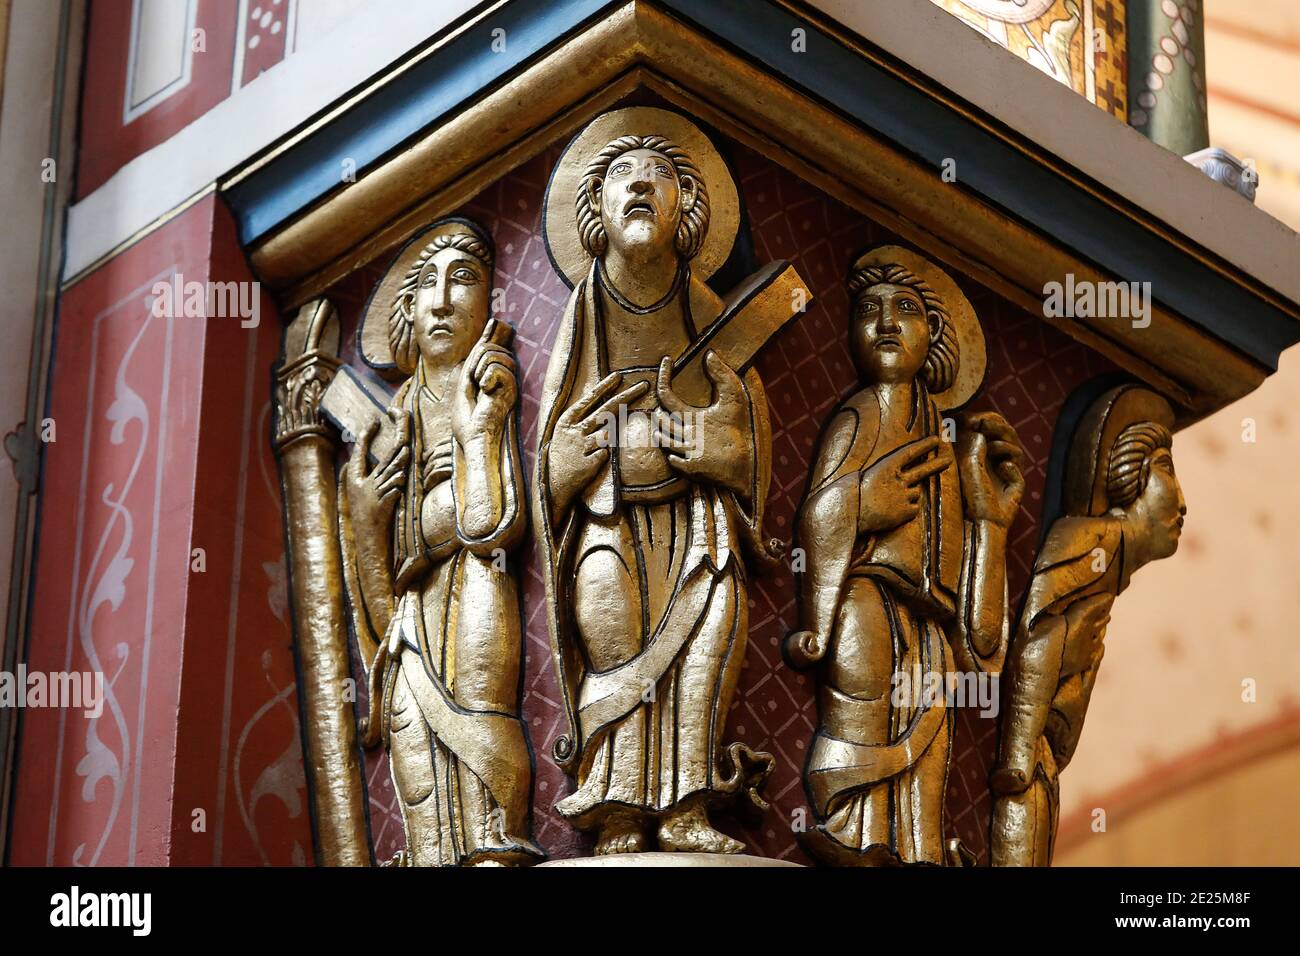 Saint Germain des Pres church, Paris, France. Capital. Saints holding the rule of St Benedict Stock Photo